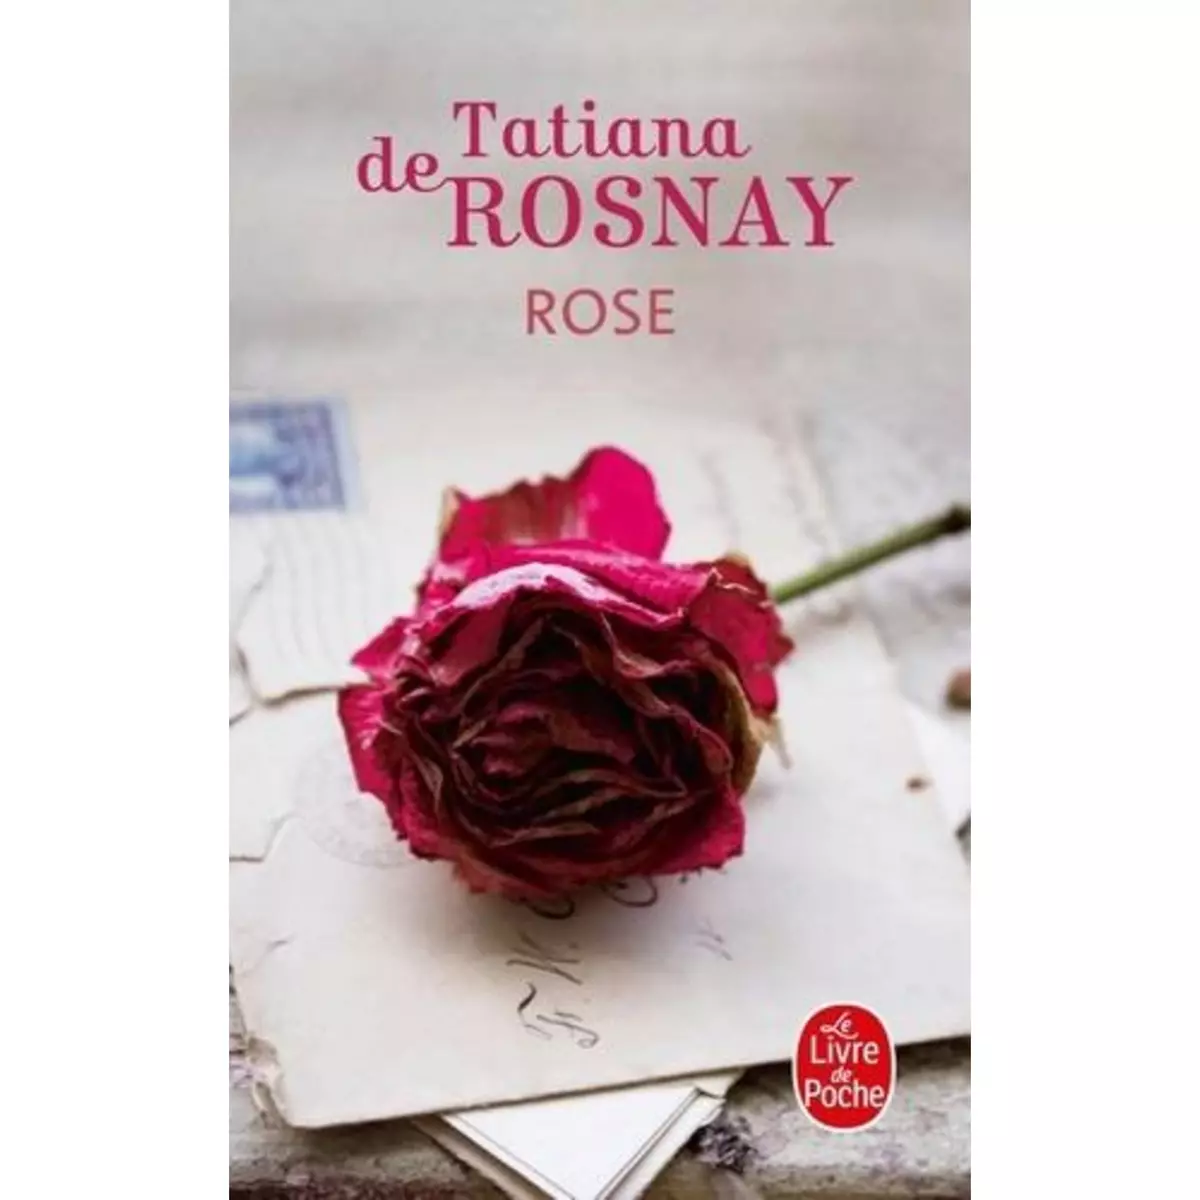  ROSE, Rosnay Tatiana de